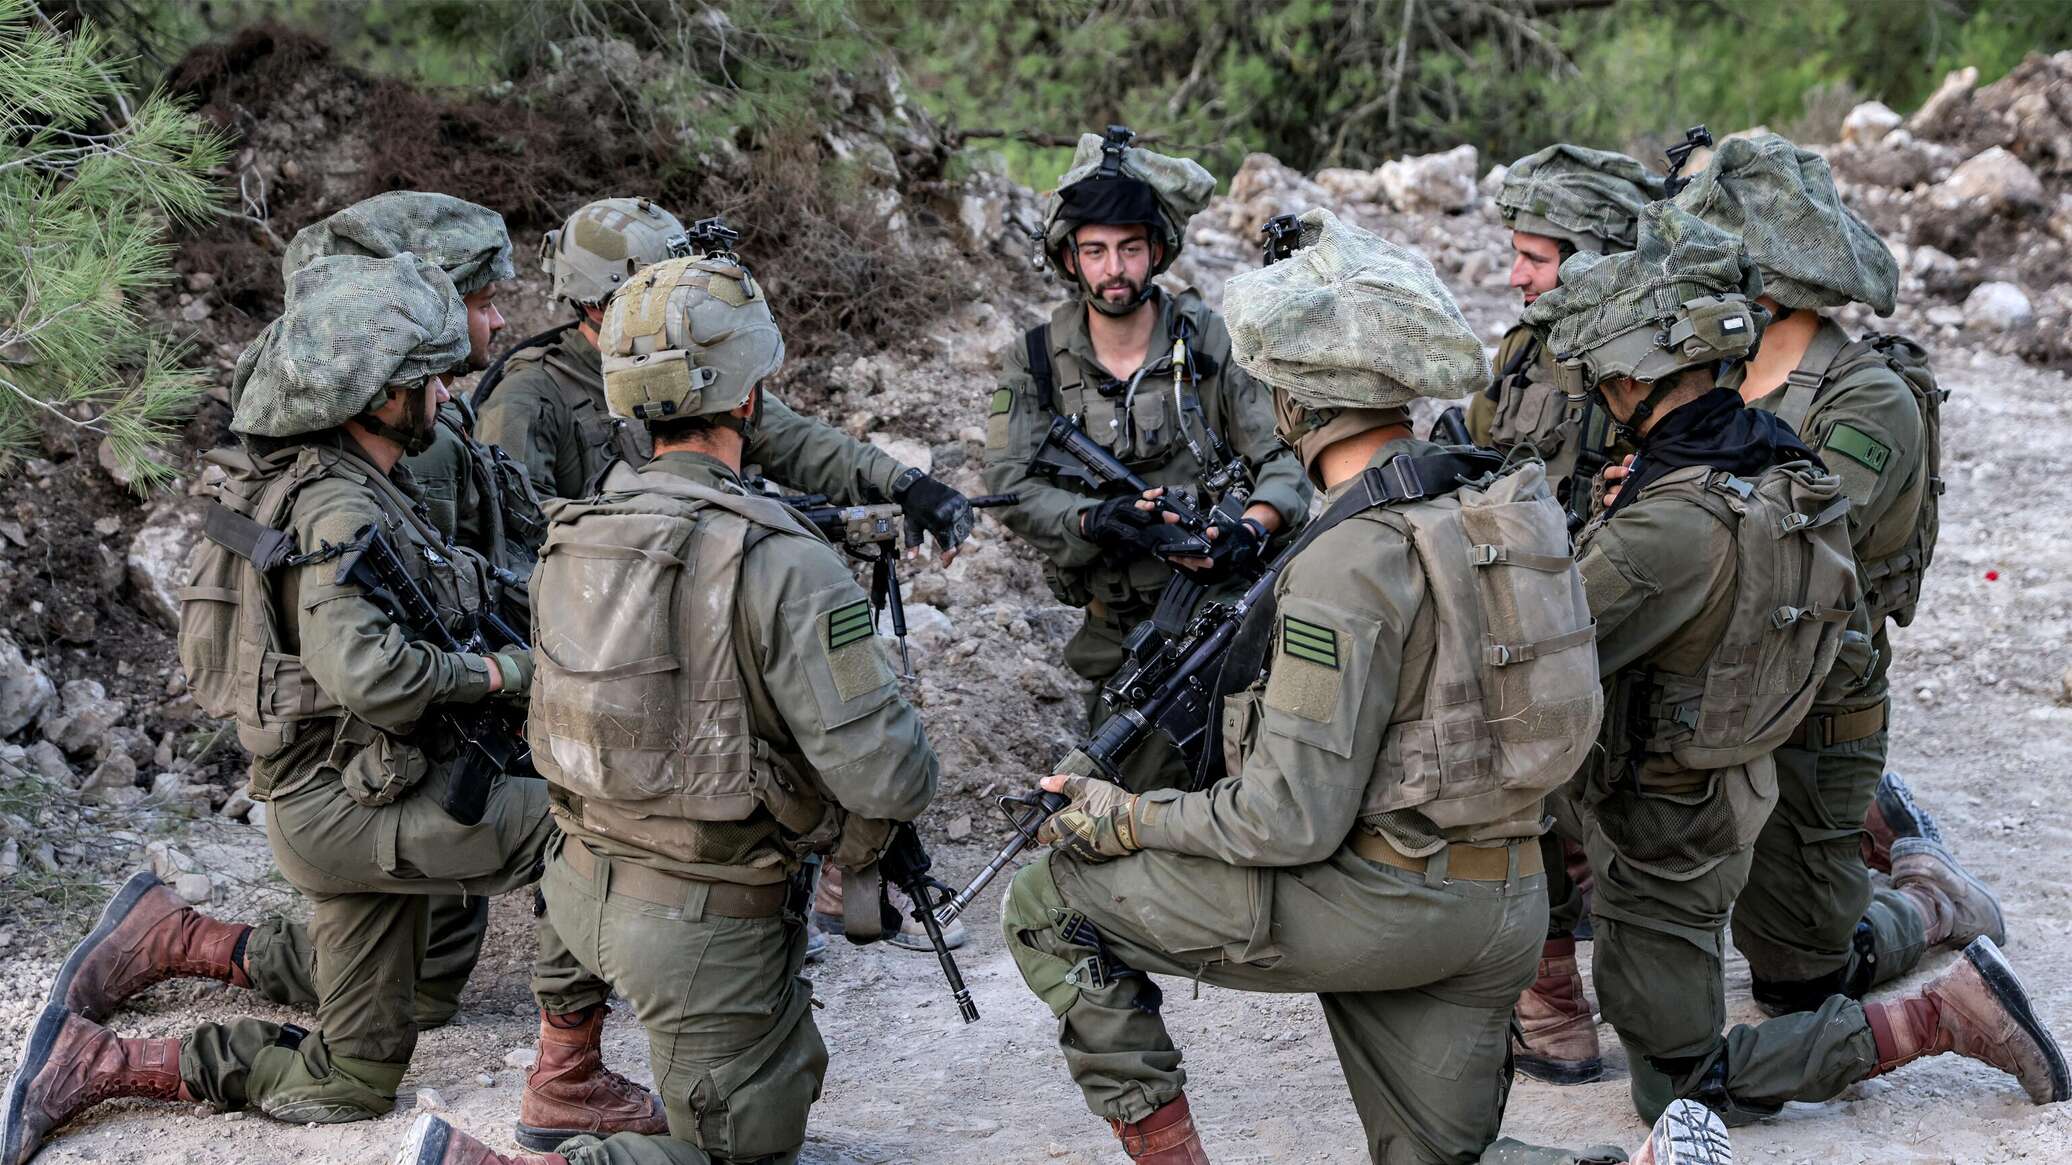 وقال الجيش الإسرائيلي إنه سيوسع عملياته إلى جنوب قطاع غزة إذا لزم الأمر